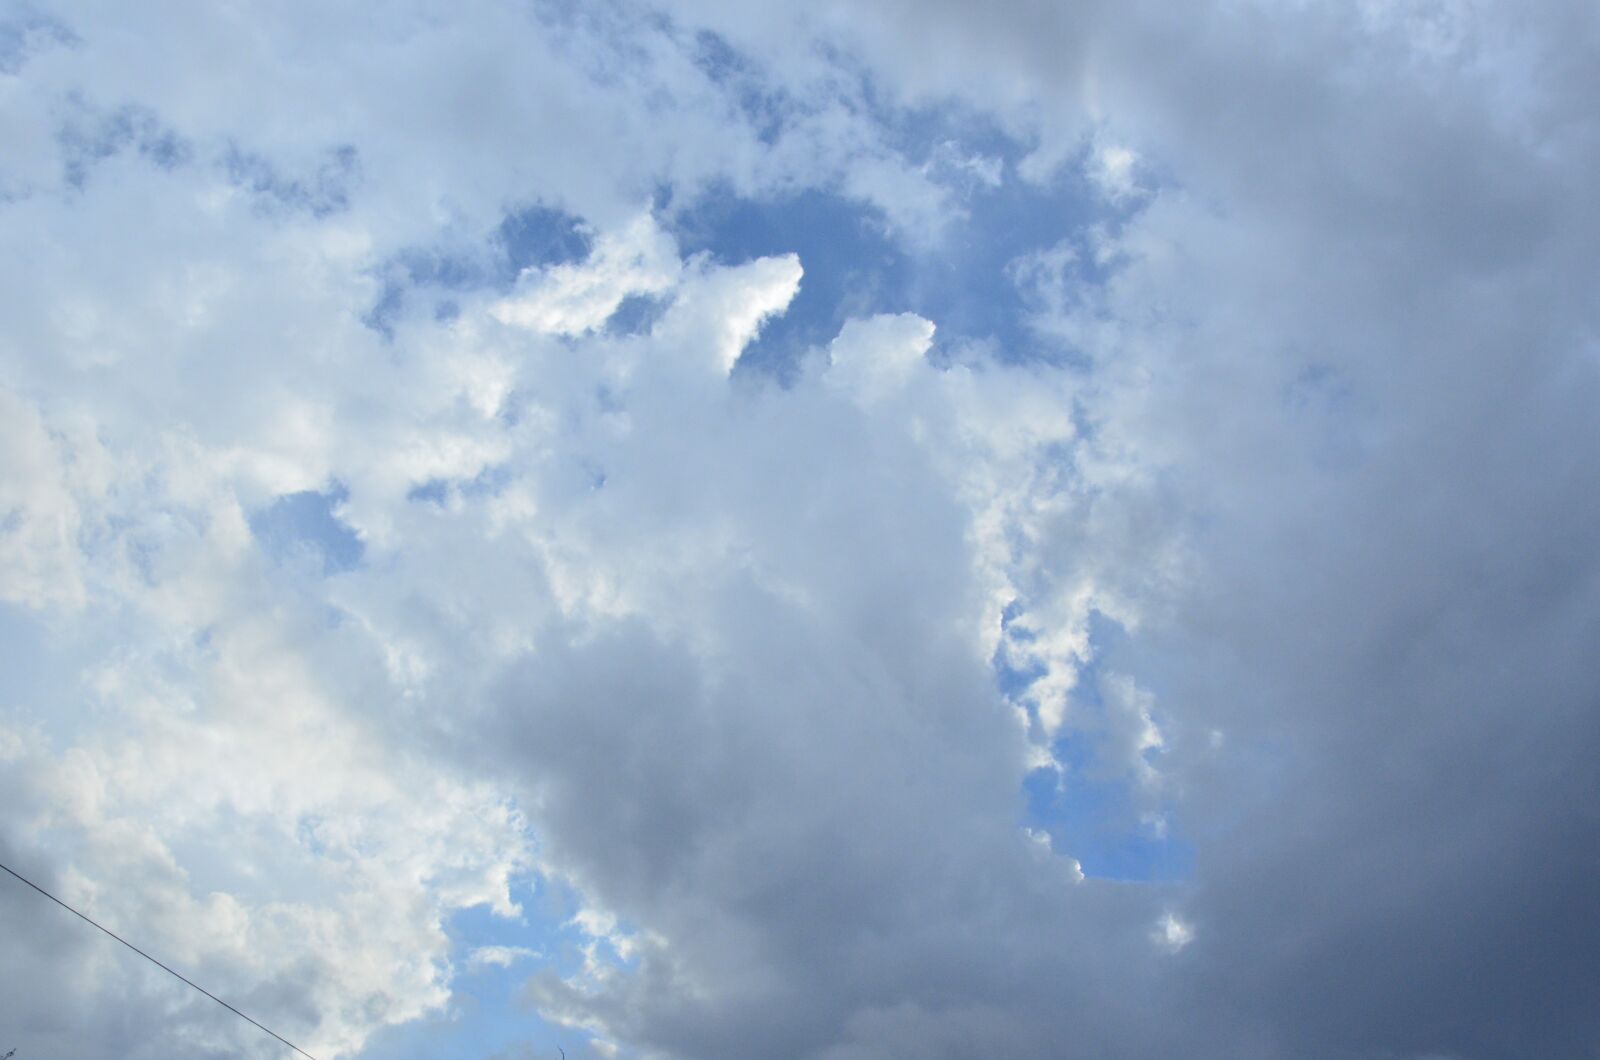 Nikon D7000 sample photo. Cielo, nubes, verano photography